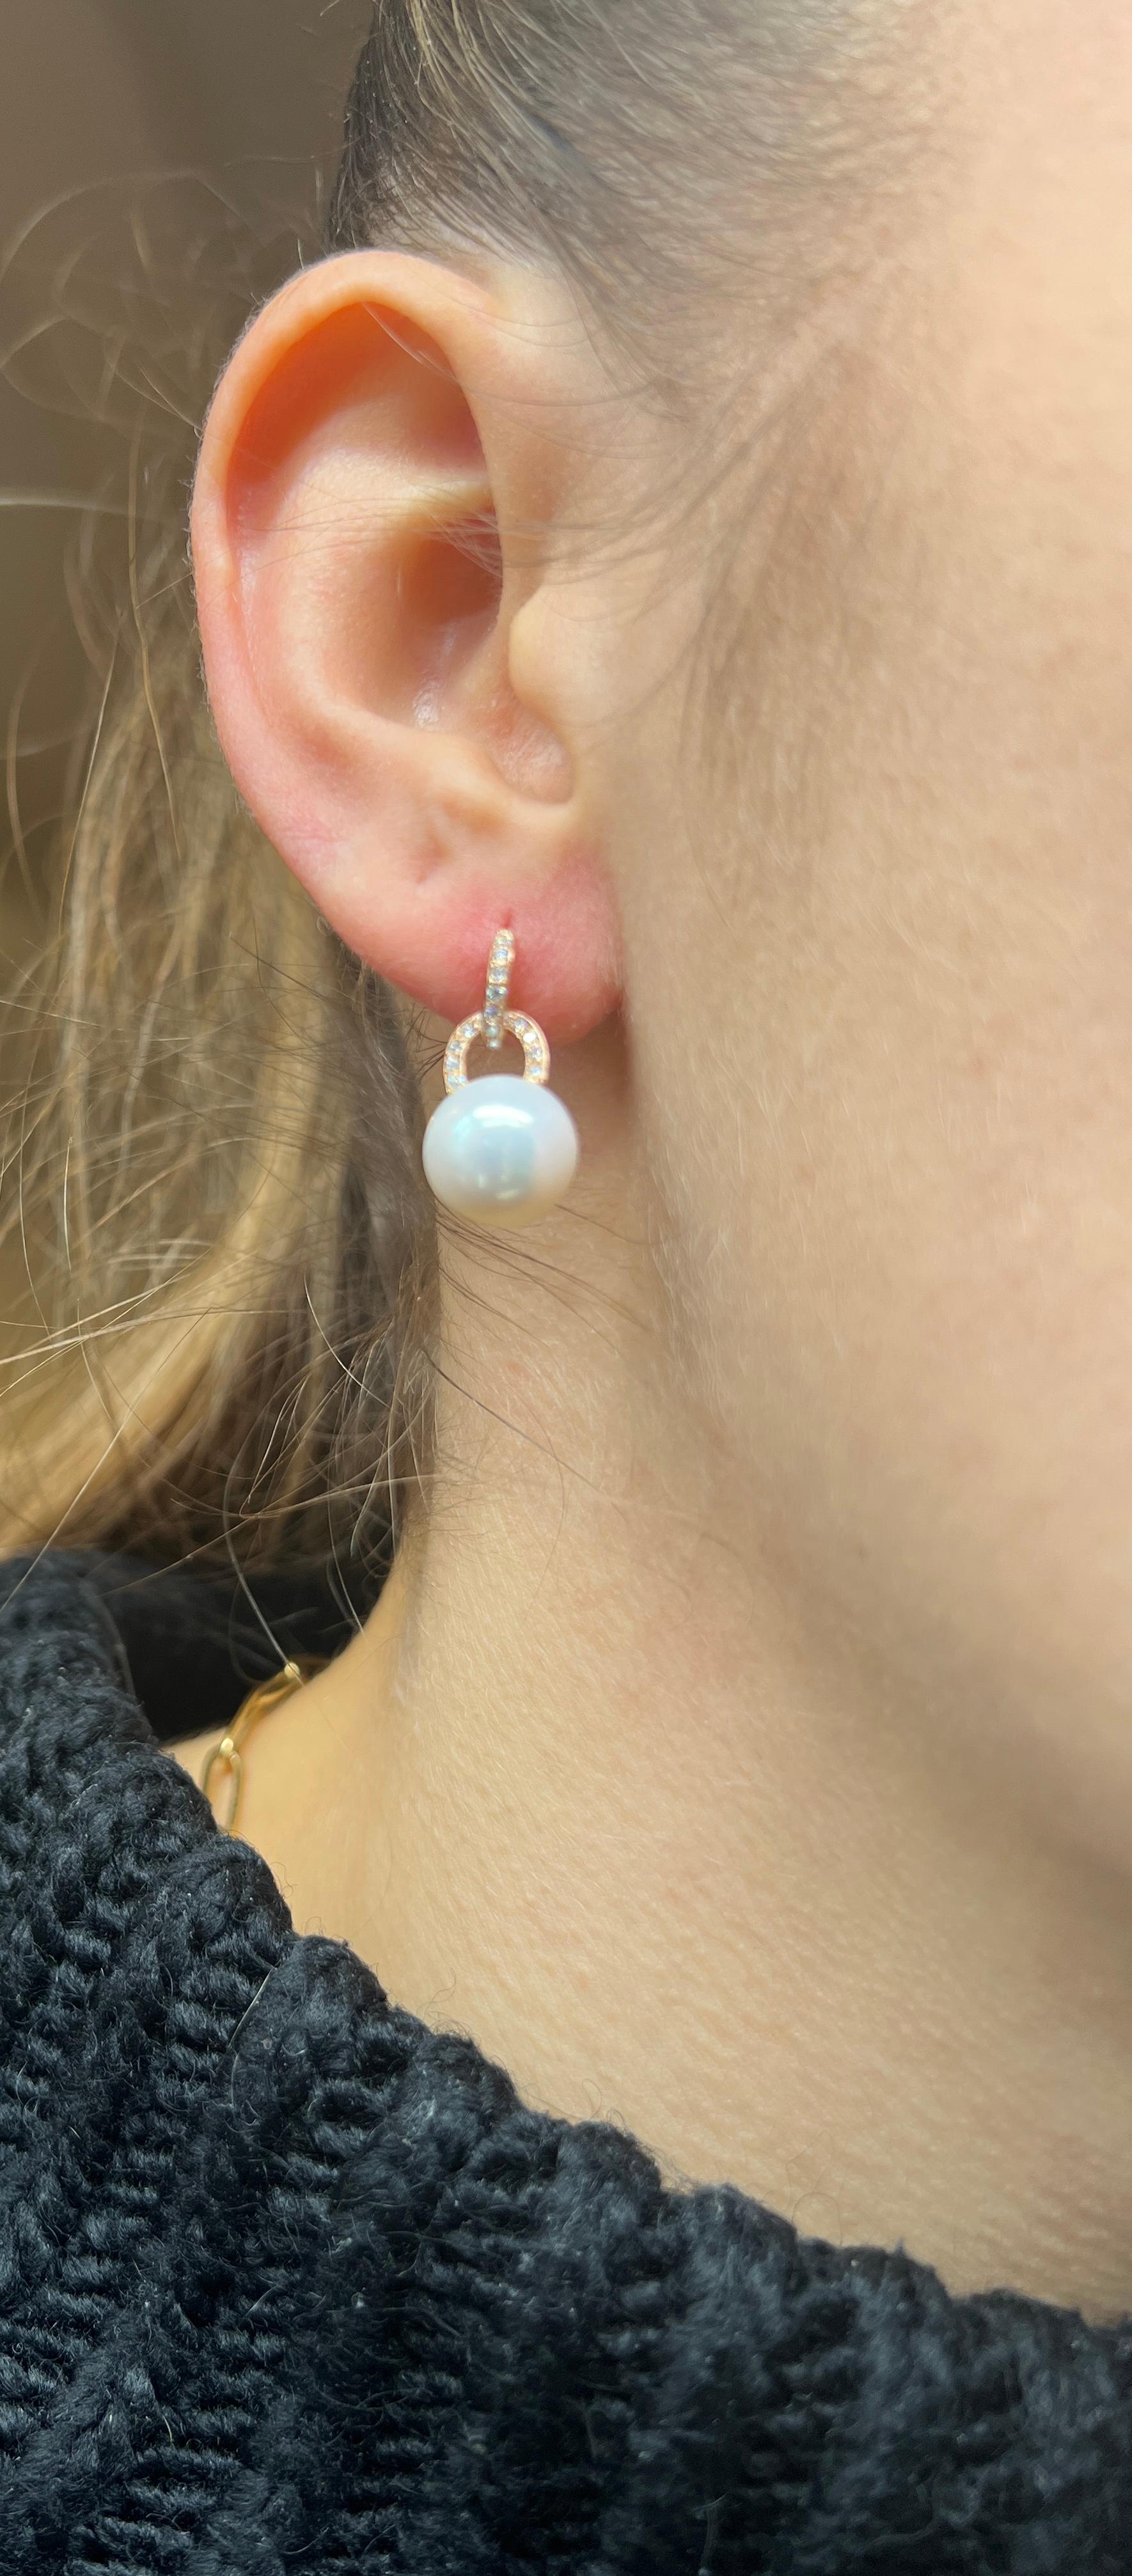 Boucles d'oreilles Pendentifs Perles d'or Diamants Or rose 

Superbes boucles d'oreilles en or rose surmontées de 2 anneaux sertis de 9 diamants taille brillant pour un poids de 0,170 carats chacun. Pour terminer ces boucles d'oreilles, 1 perle